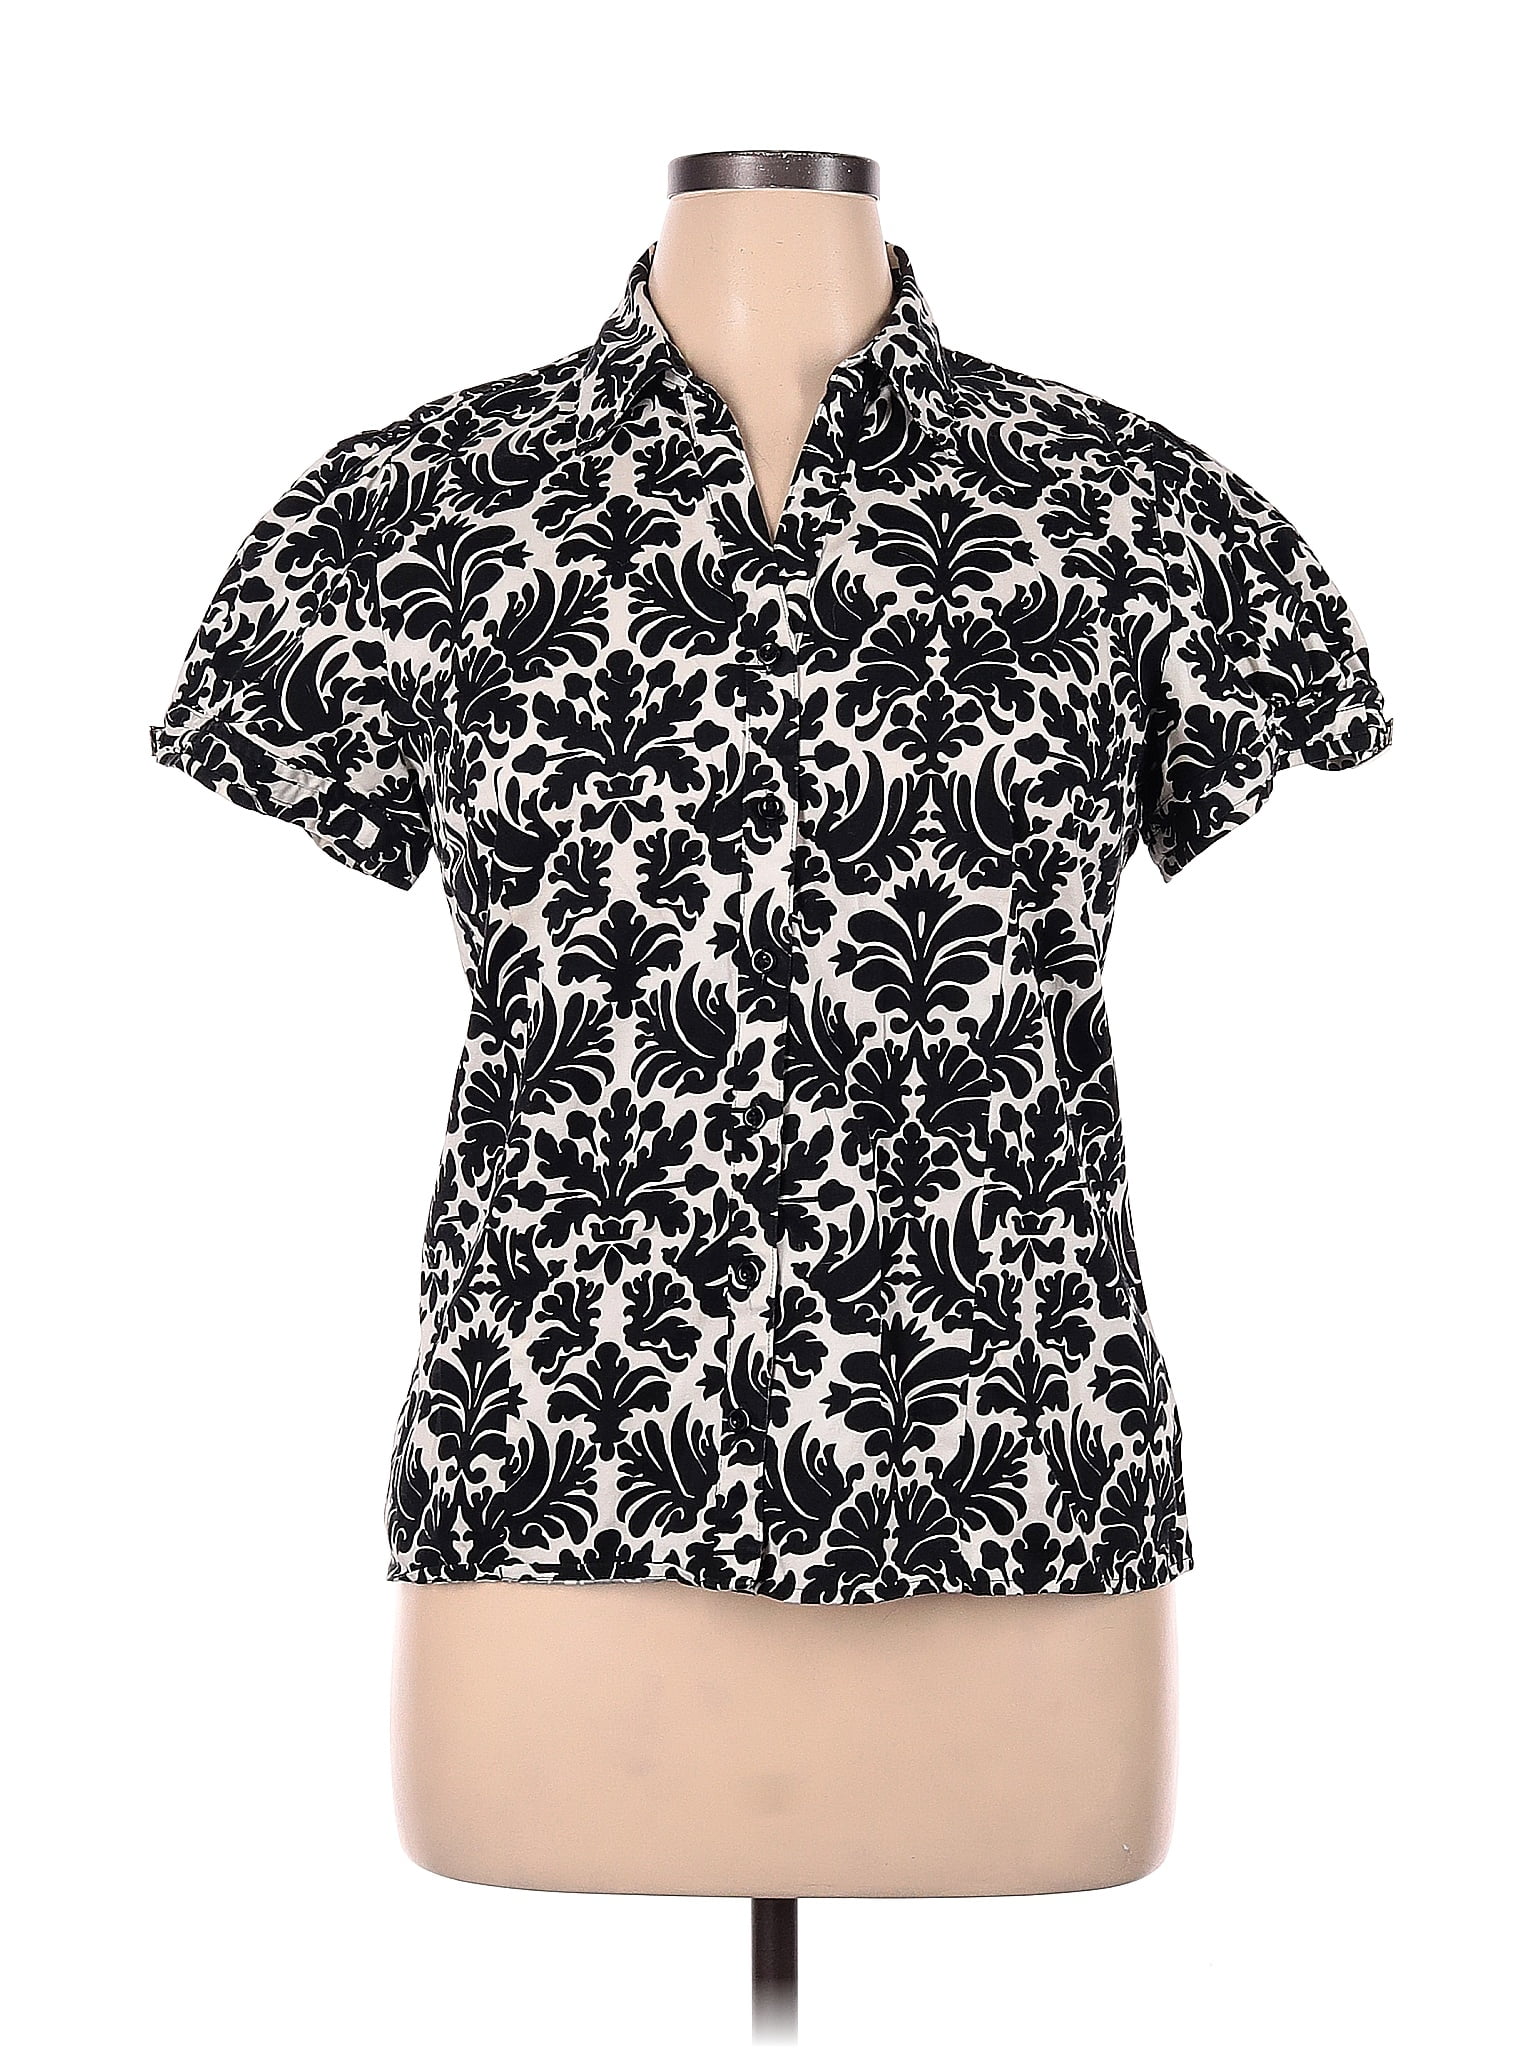 Apt. 9 Multi Color Black Short Sleeve Button-Down Shirt Size XL - 61% ...